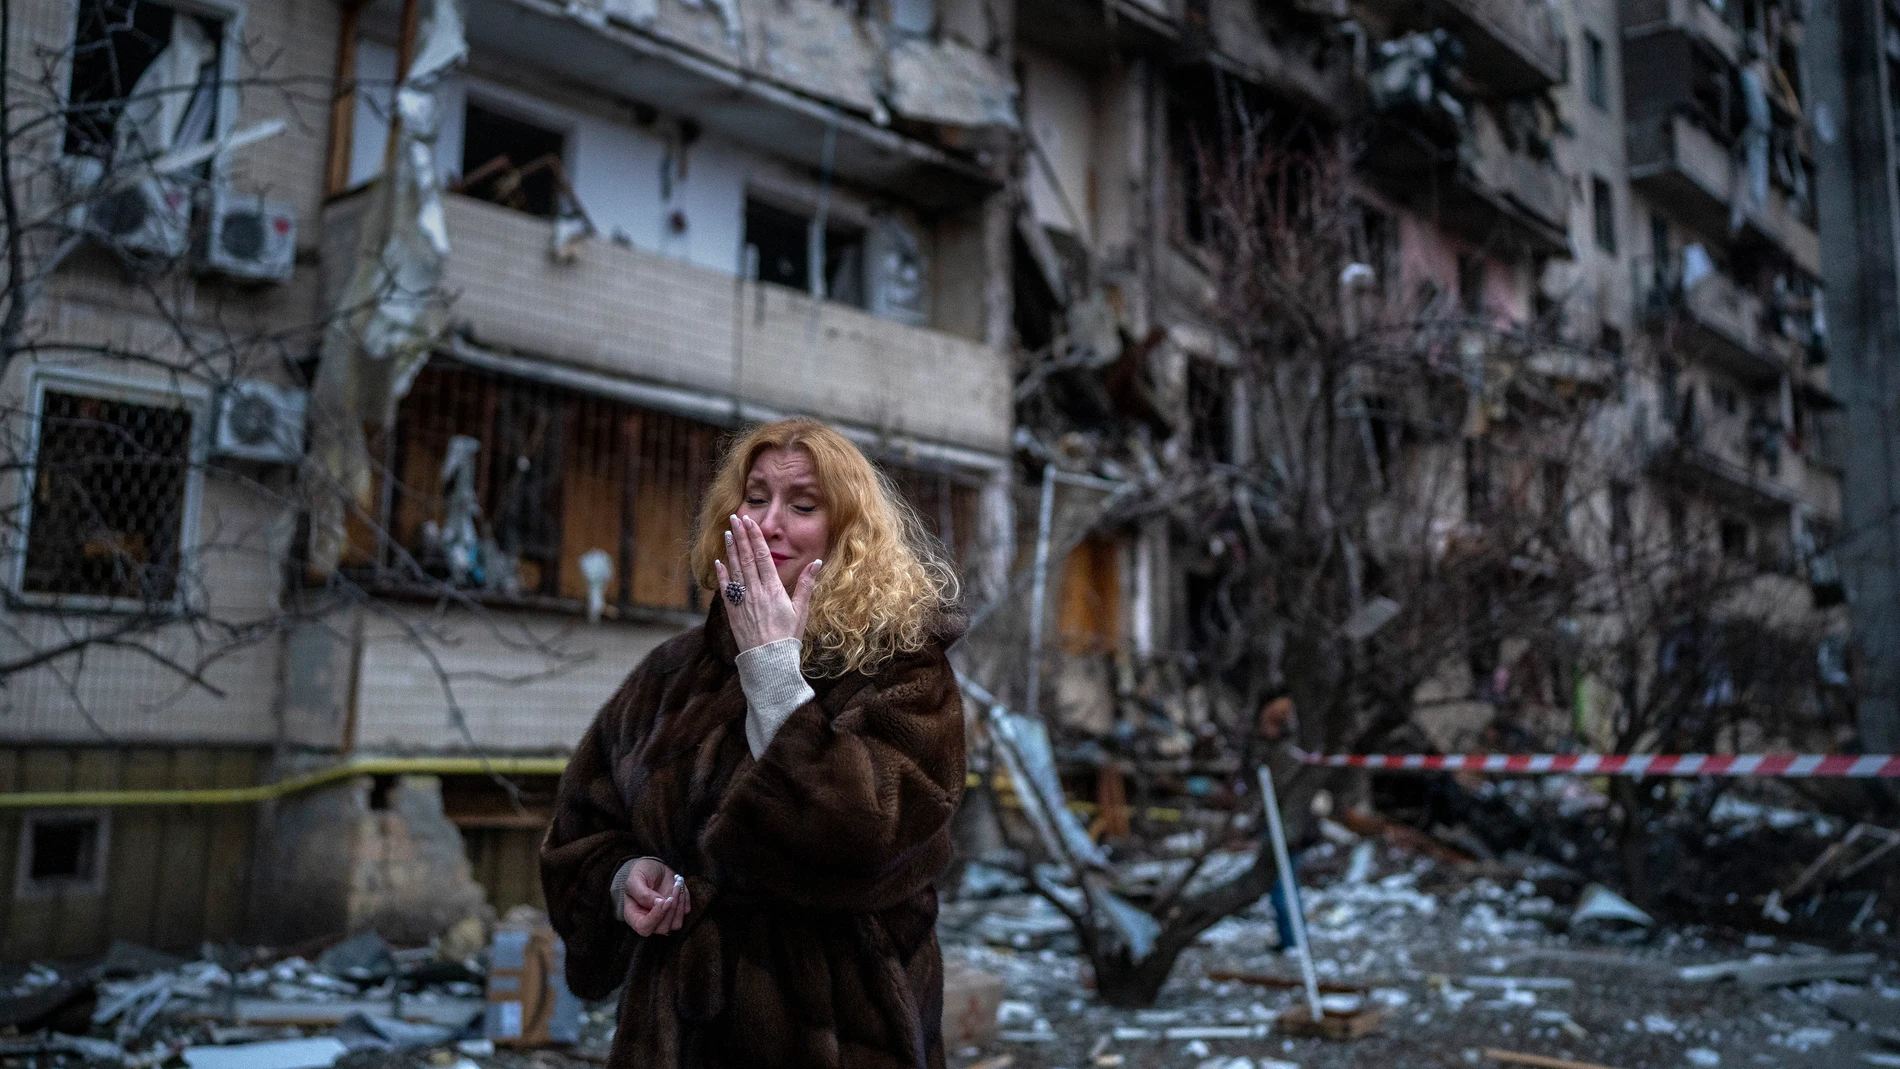 La reacción de Natali Sevriukova tras el ataque ruso de su casa en Kiev, Ucrania, el 25 de febrero 